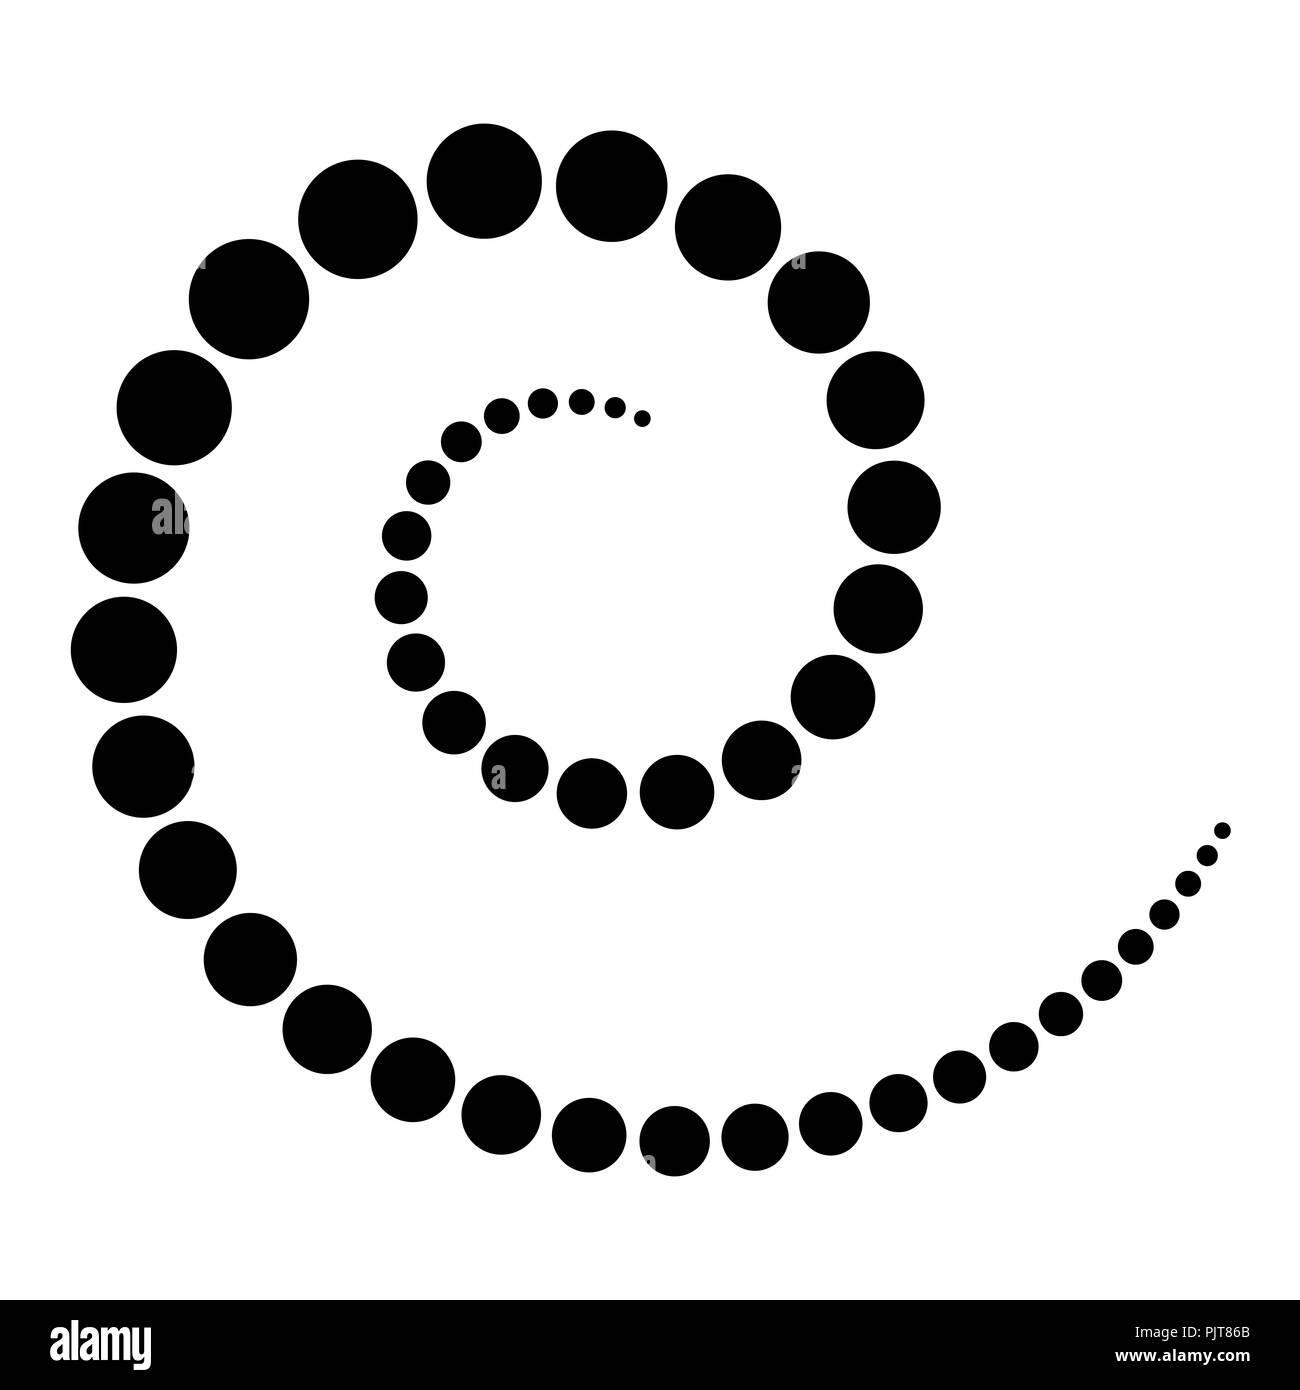 Faites en spirale de points noirs. Points de plus en plus du centre de la spirale qui deviennent ensuite de plus petits encore. Illustration isolé noir sur blanc. Banque D'Images